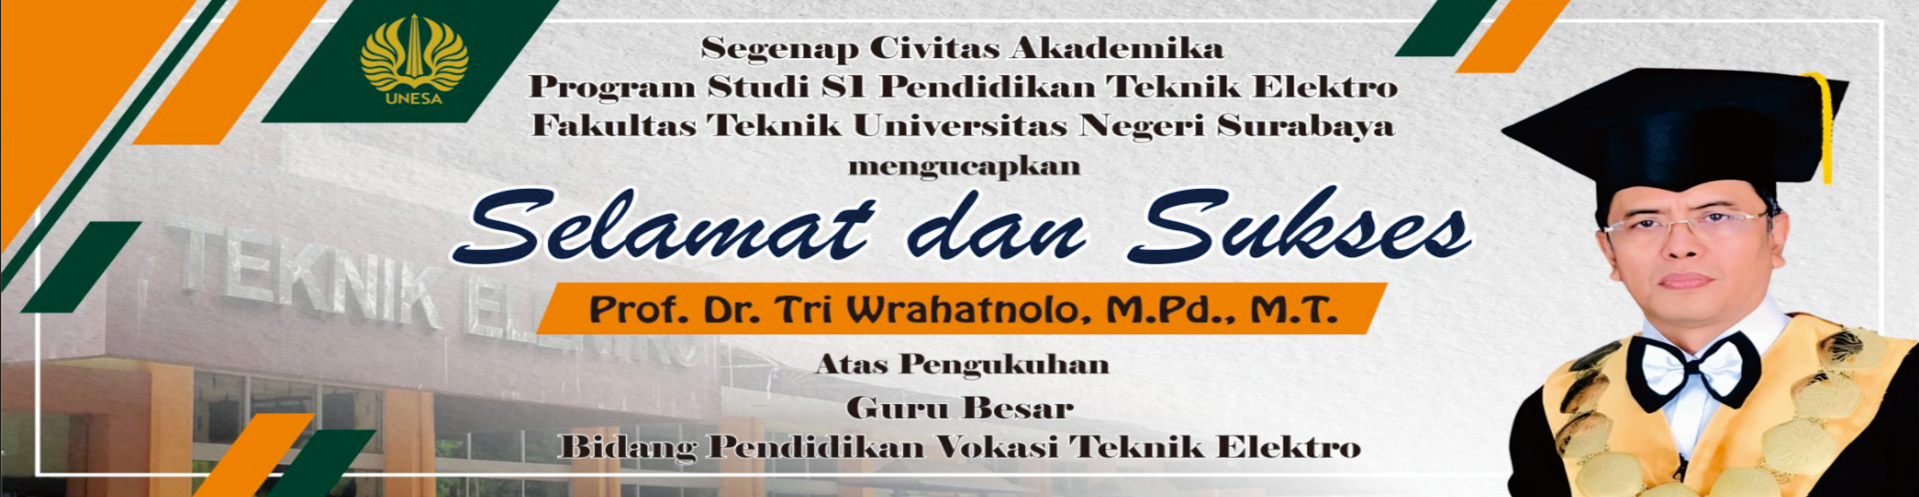 Ucapan Selamat Guru Besar Prof Tri Wrahatnolo